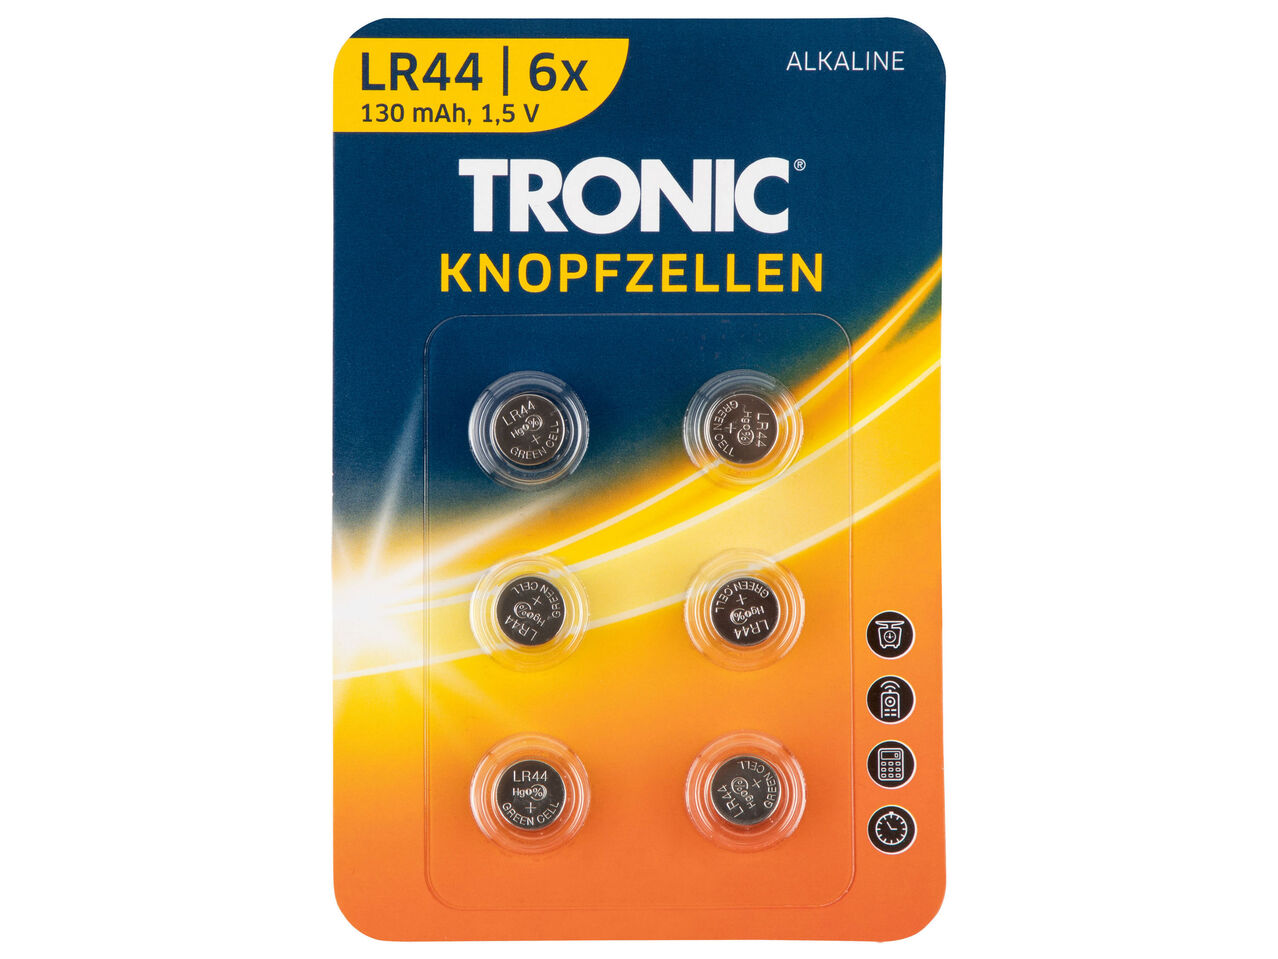 TRONIC , cena 9,99 PLN 
TRONIC® Zestaw baterii guzikowych, 6 szt. 
- 
pasują ...